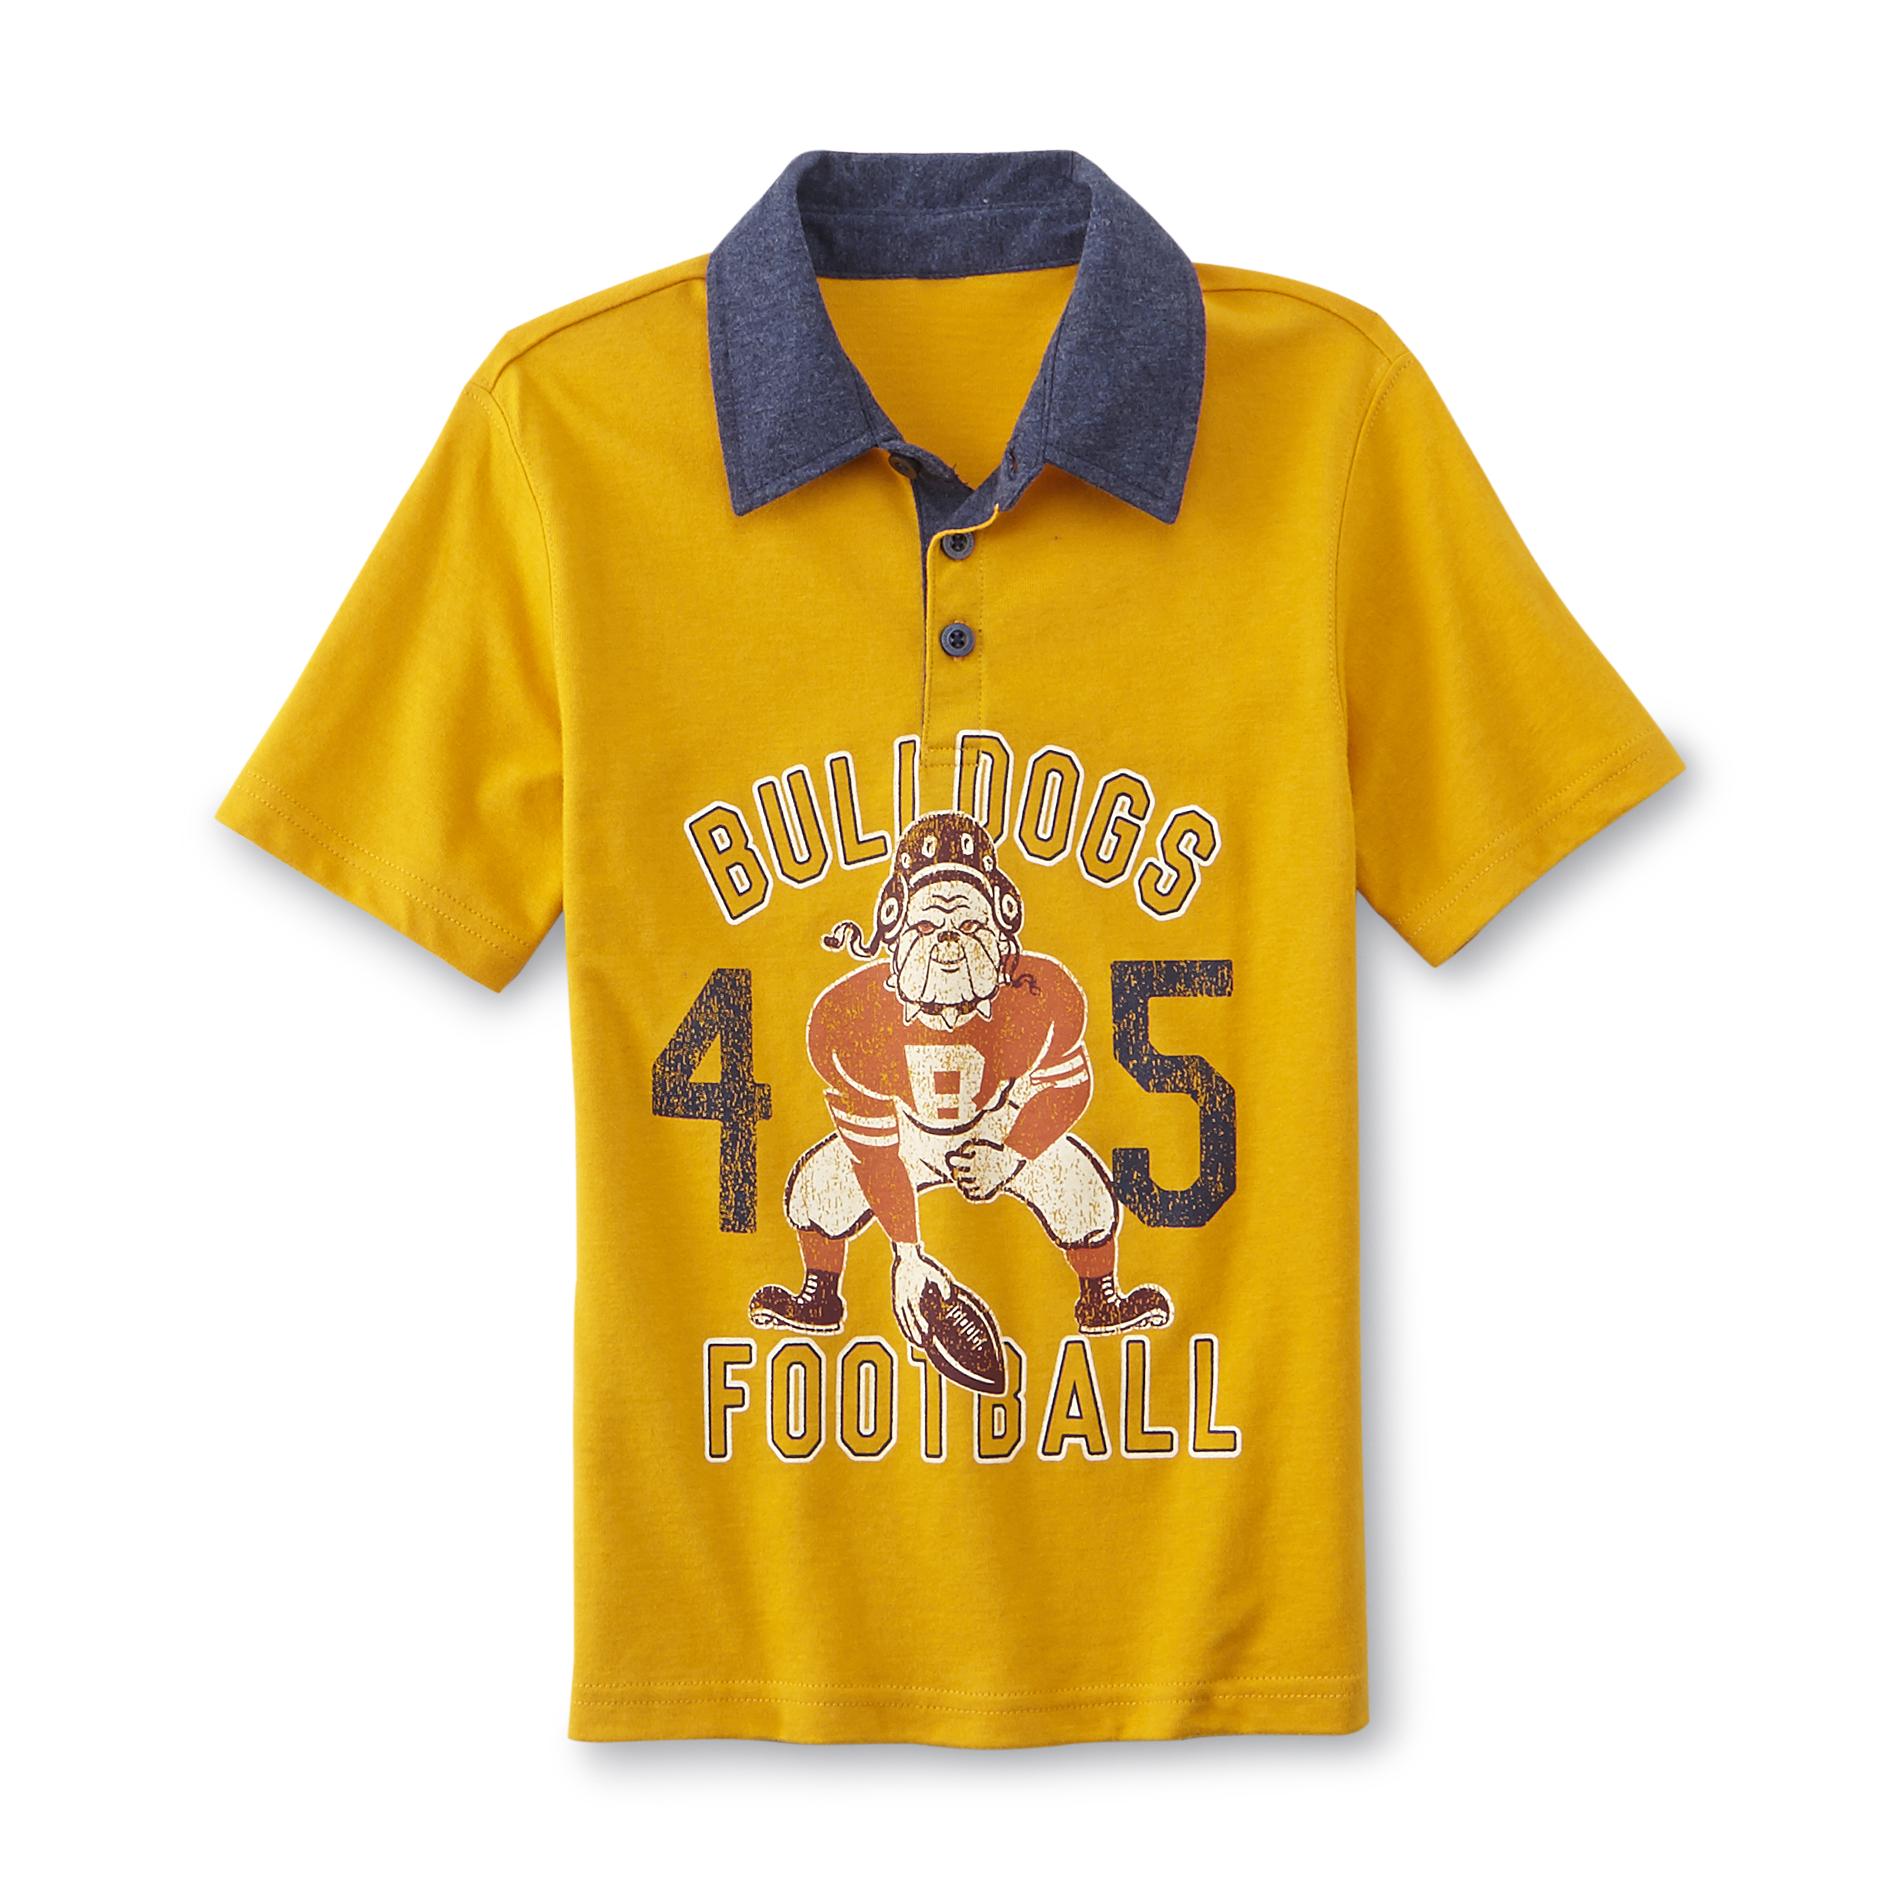 Toughskins Boy's Polo Shirt - Bulldogs Football